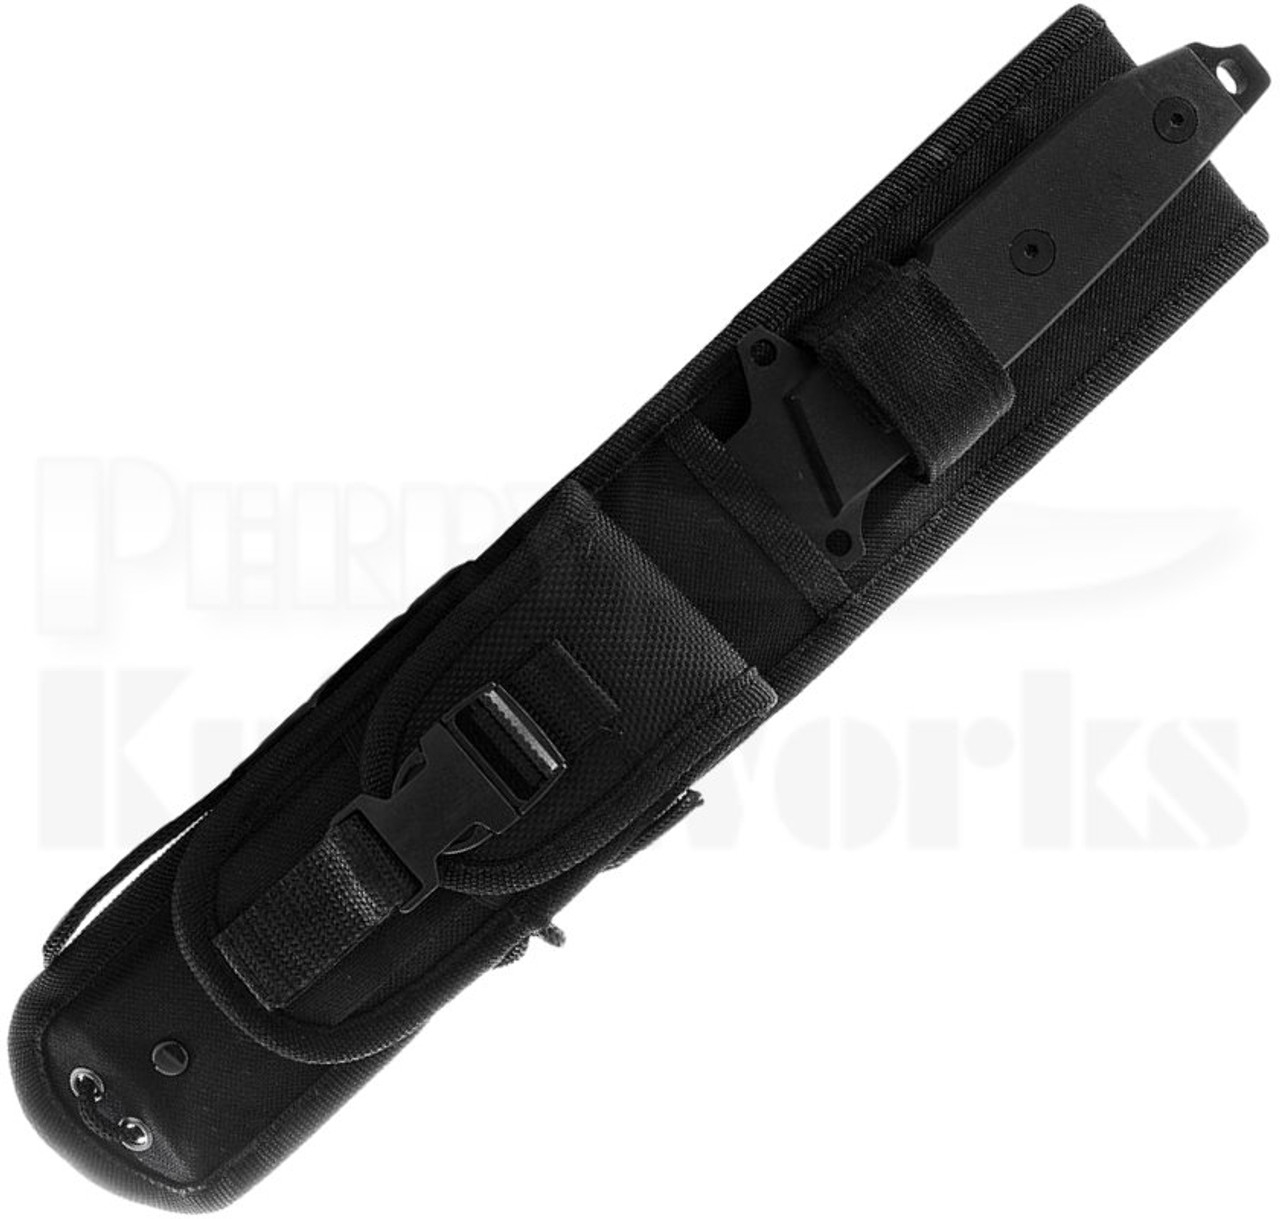 Smith & Wesson Homeland Security Knife (6" Black) CKSUR4N